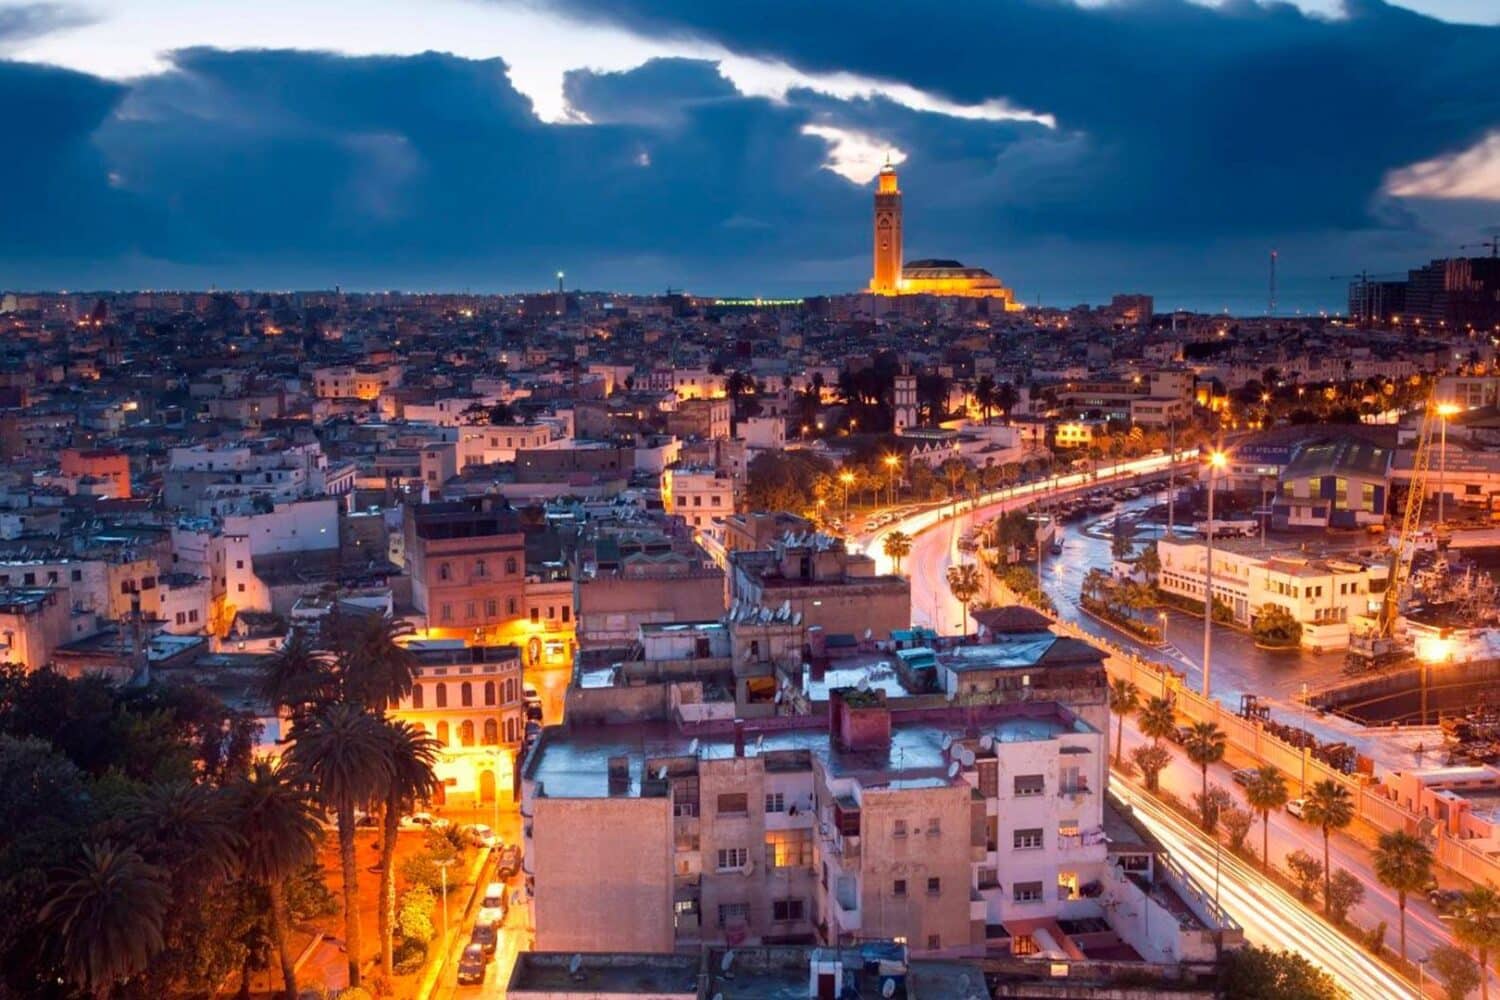 Casablanca at night